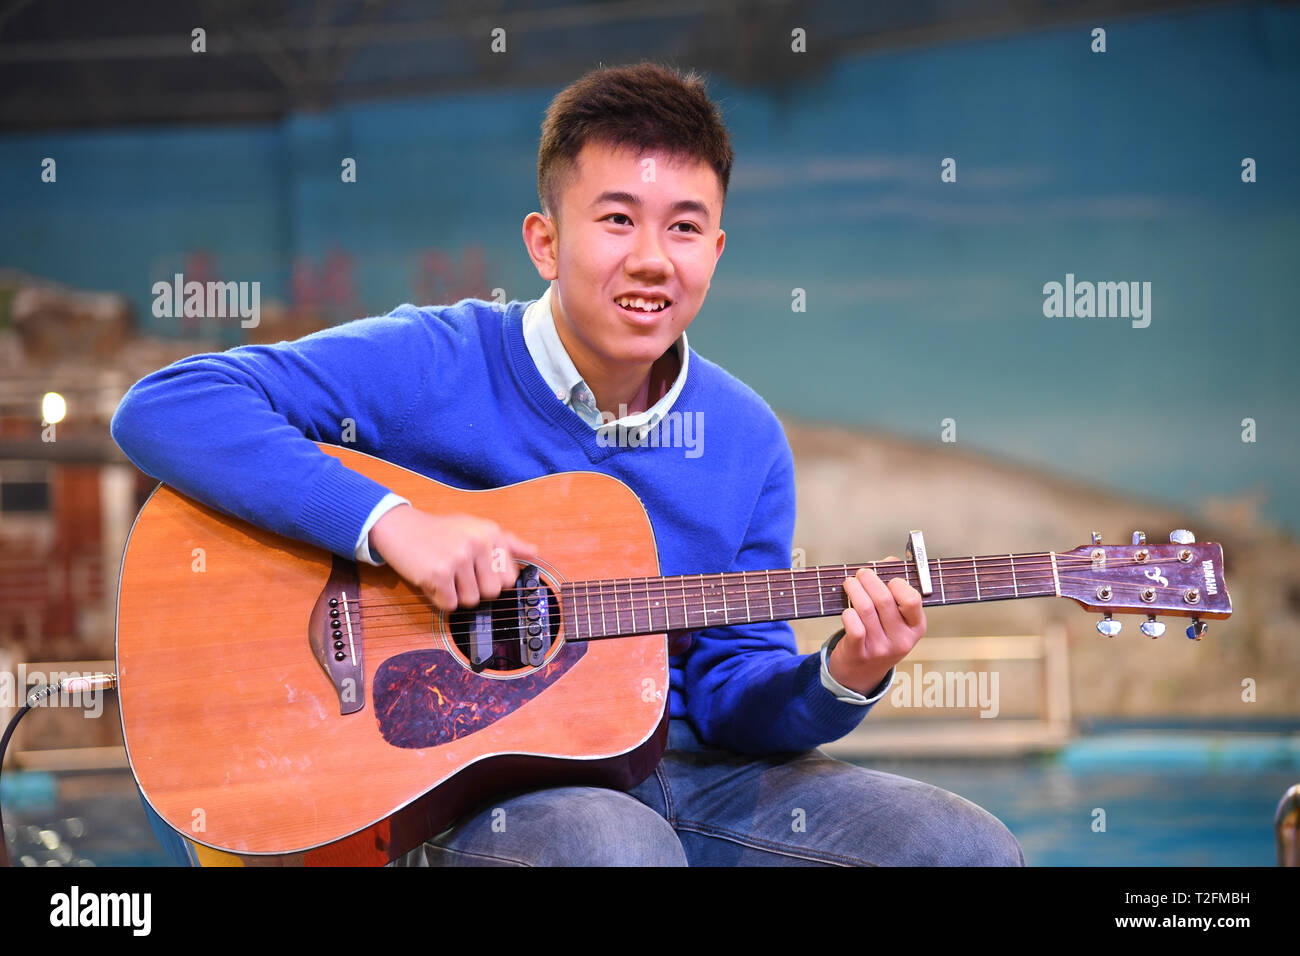 (190402) -- QINGDAO, 2 aprile 2019 (Xinhua) -- Zheng Senyou suona la chitarra per persone a Qingdao, Cina orientale della provincia di Shandong, il 1 aprile 2019. Zheng Senyou, un 16-anno vecchio adolescente, è stato diagnosticato autismo all'età di quattro anni. Come un bambino autistico, egli soffre di socializzare e linguaggio. Come comune di cure mediche hanno contribuito poco, Zheng e la sua famiglia sono stati in cerca di opzioni e avuto modo di conoscere DFH (Immersioni per l'umanità), un non remunerative di organizzazione e il trattamento di immersione. Dopo un periodo di nove mesi di trattamento, la sua riduzione di valore è stata alleviata. Un giorno in anticipo del mondo auti Foto Stock